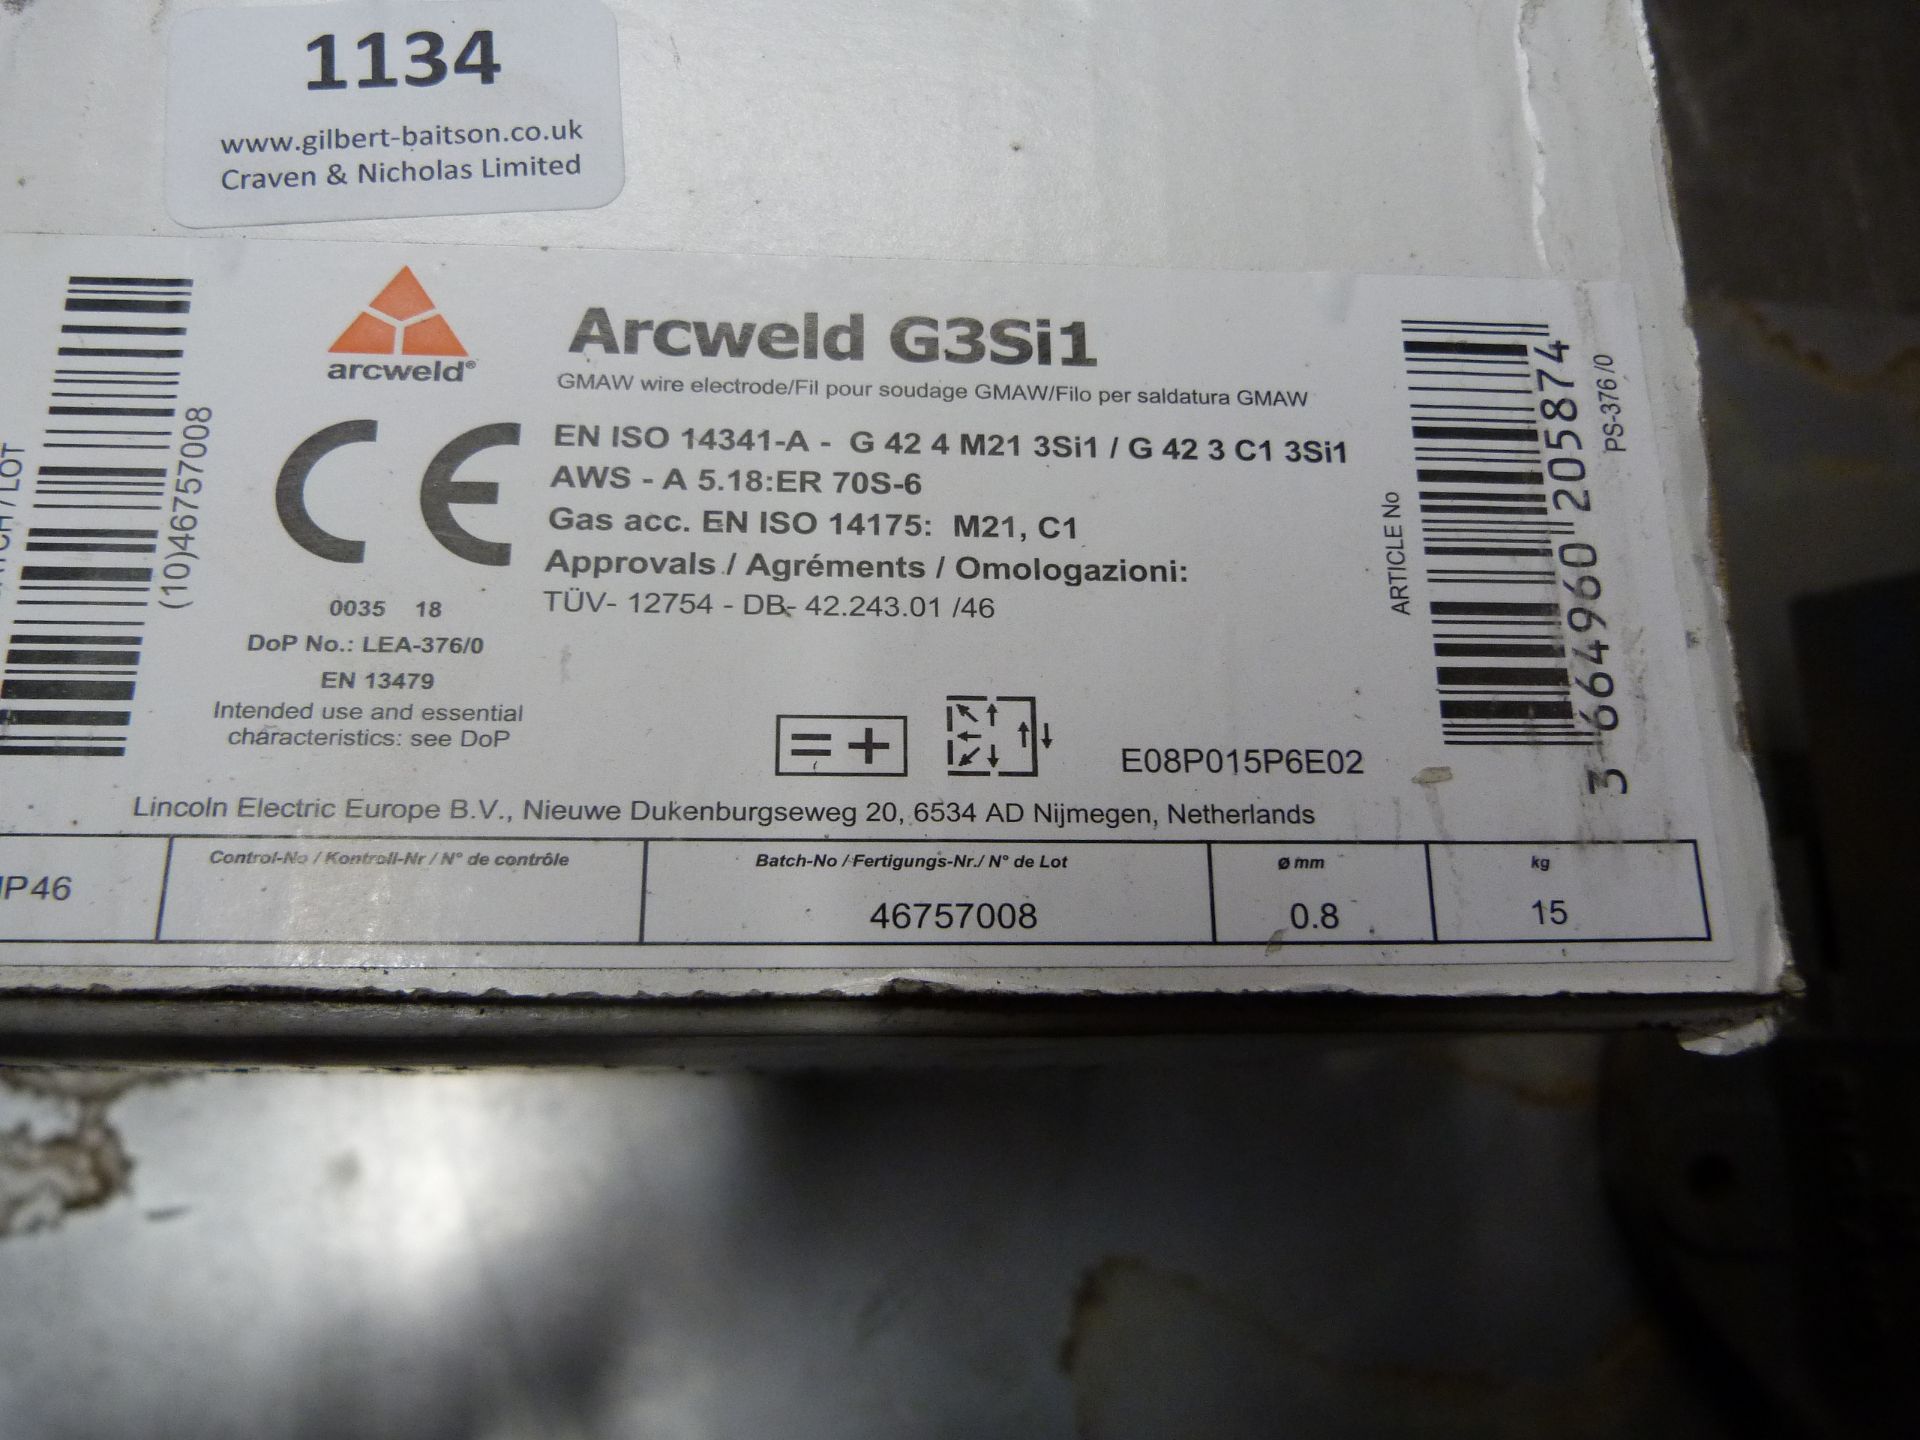 *15kg Reel of 0.8mm G Weld G3S15 Mig Welding Wire - Image 2 of 2